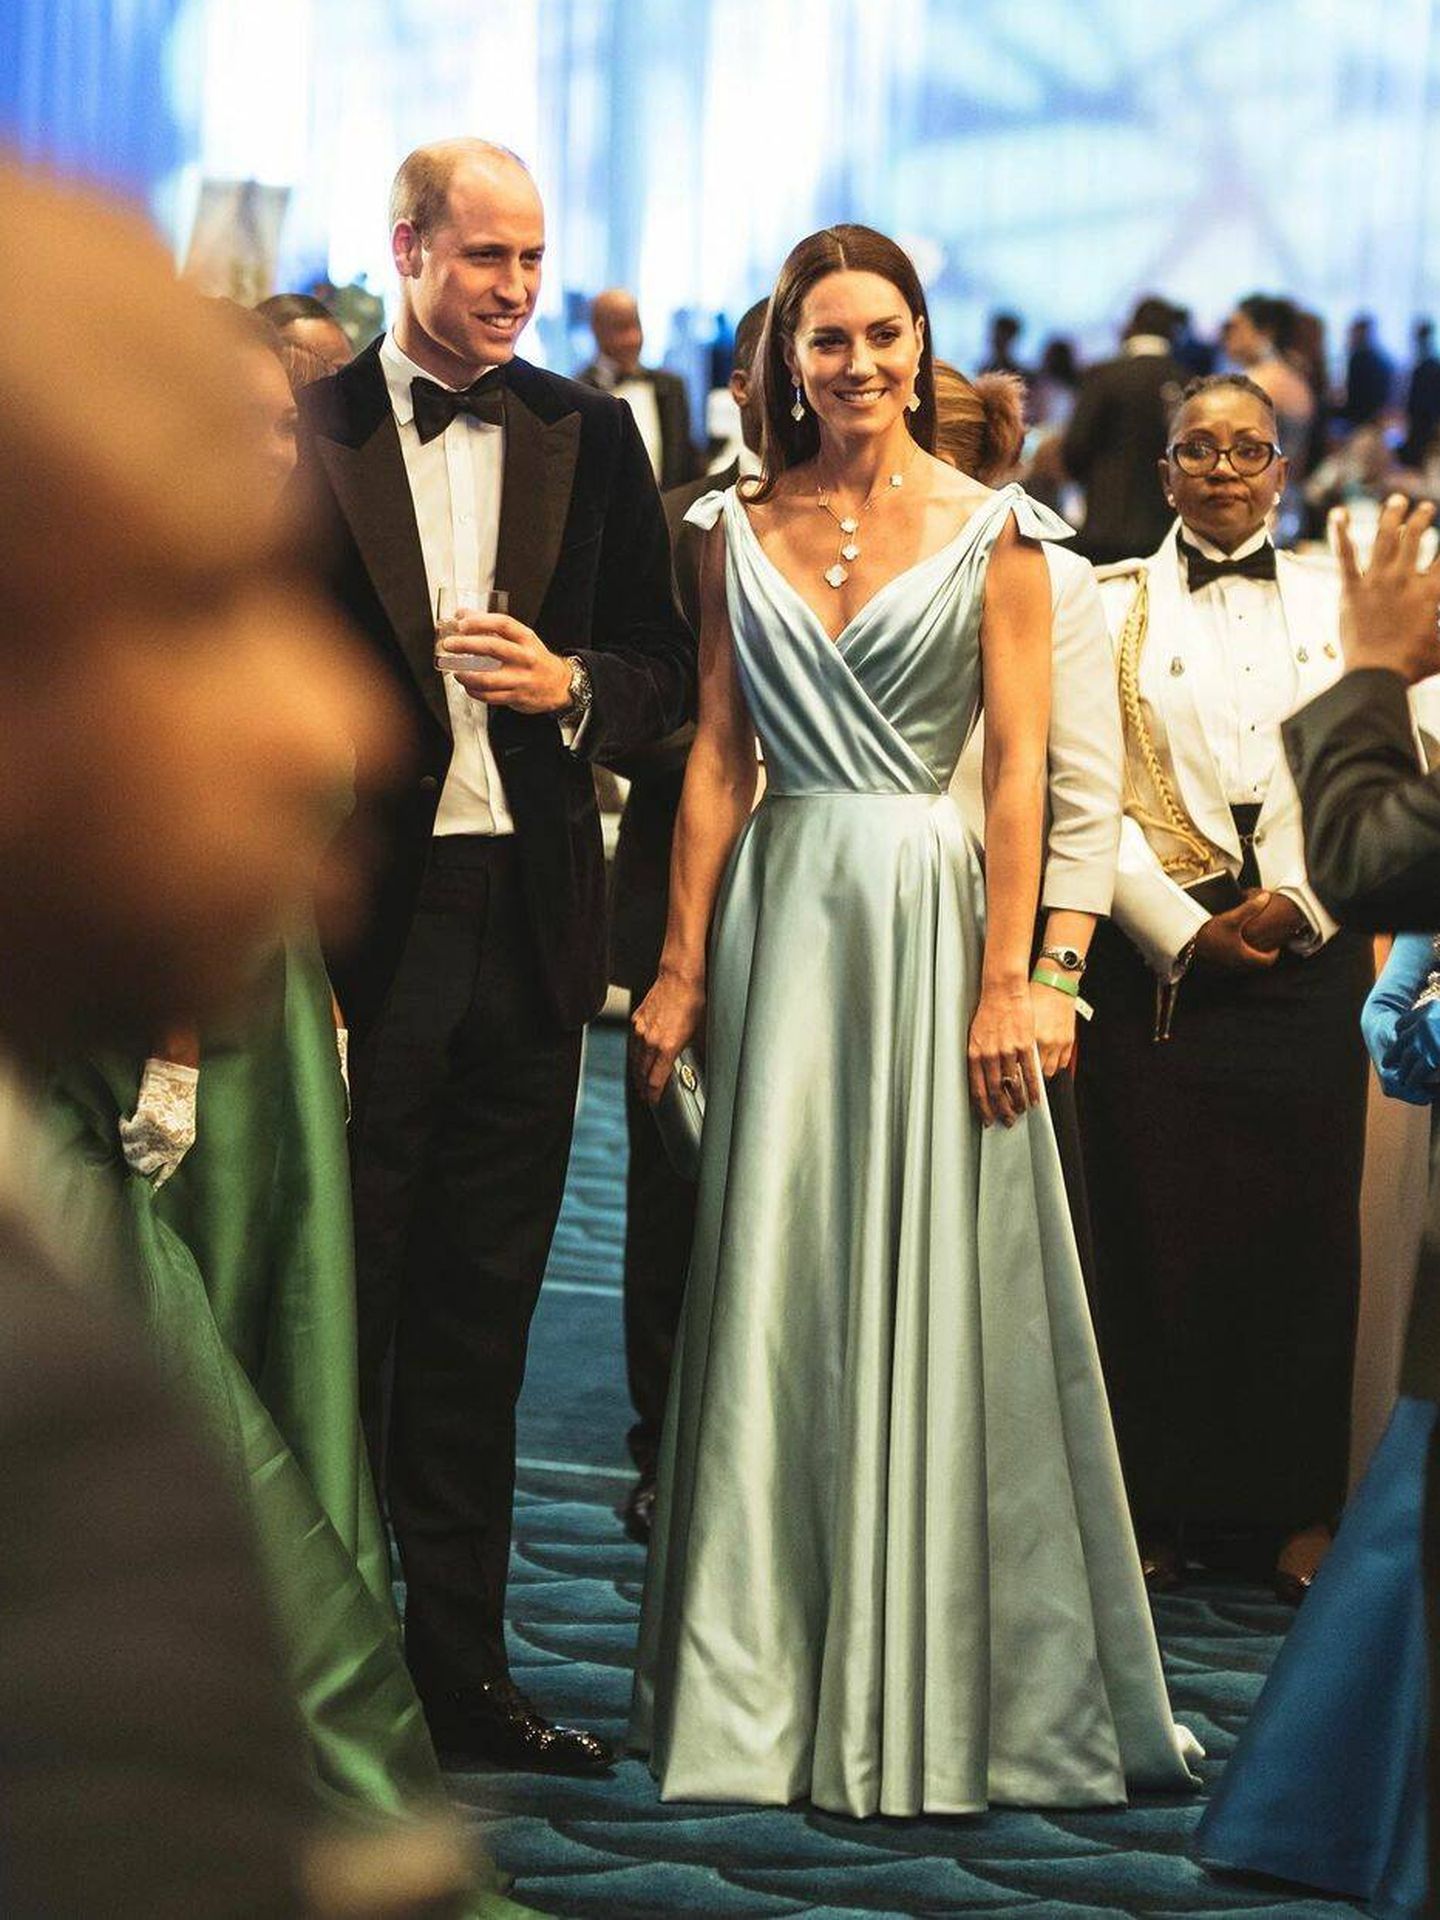 Kate Middleton, en Belice con su vestido azul hielo. (IG)